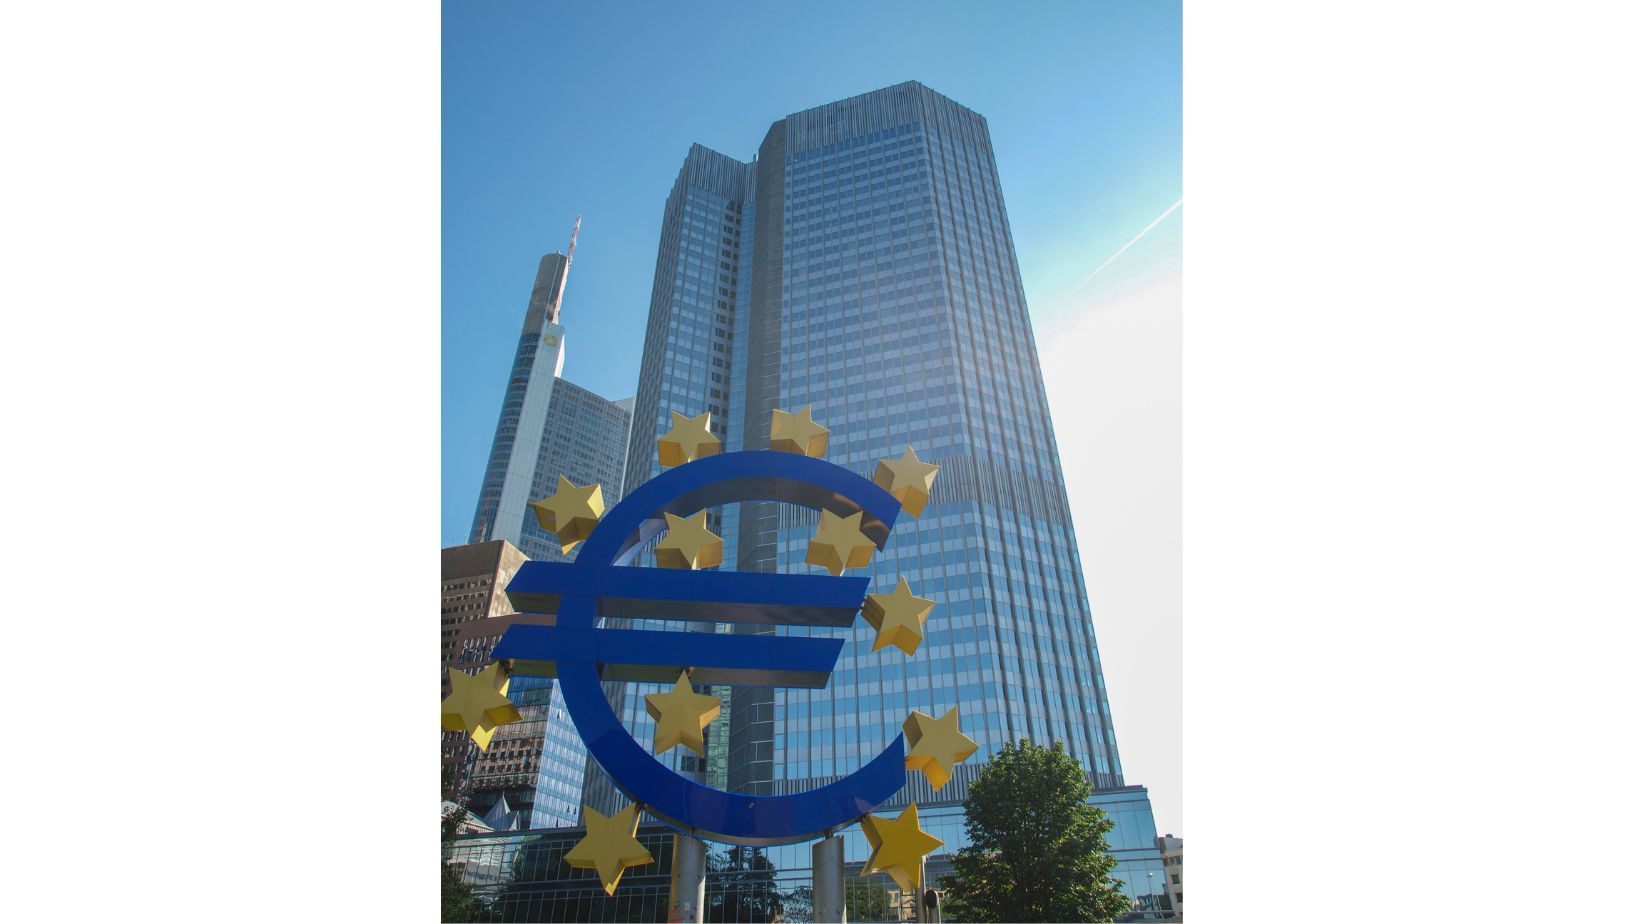 位于法兰克福的欧洲中央银行 (ECB)